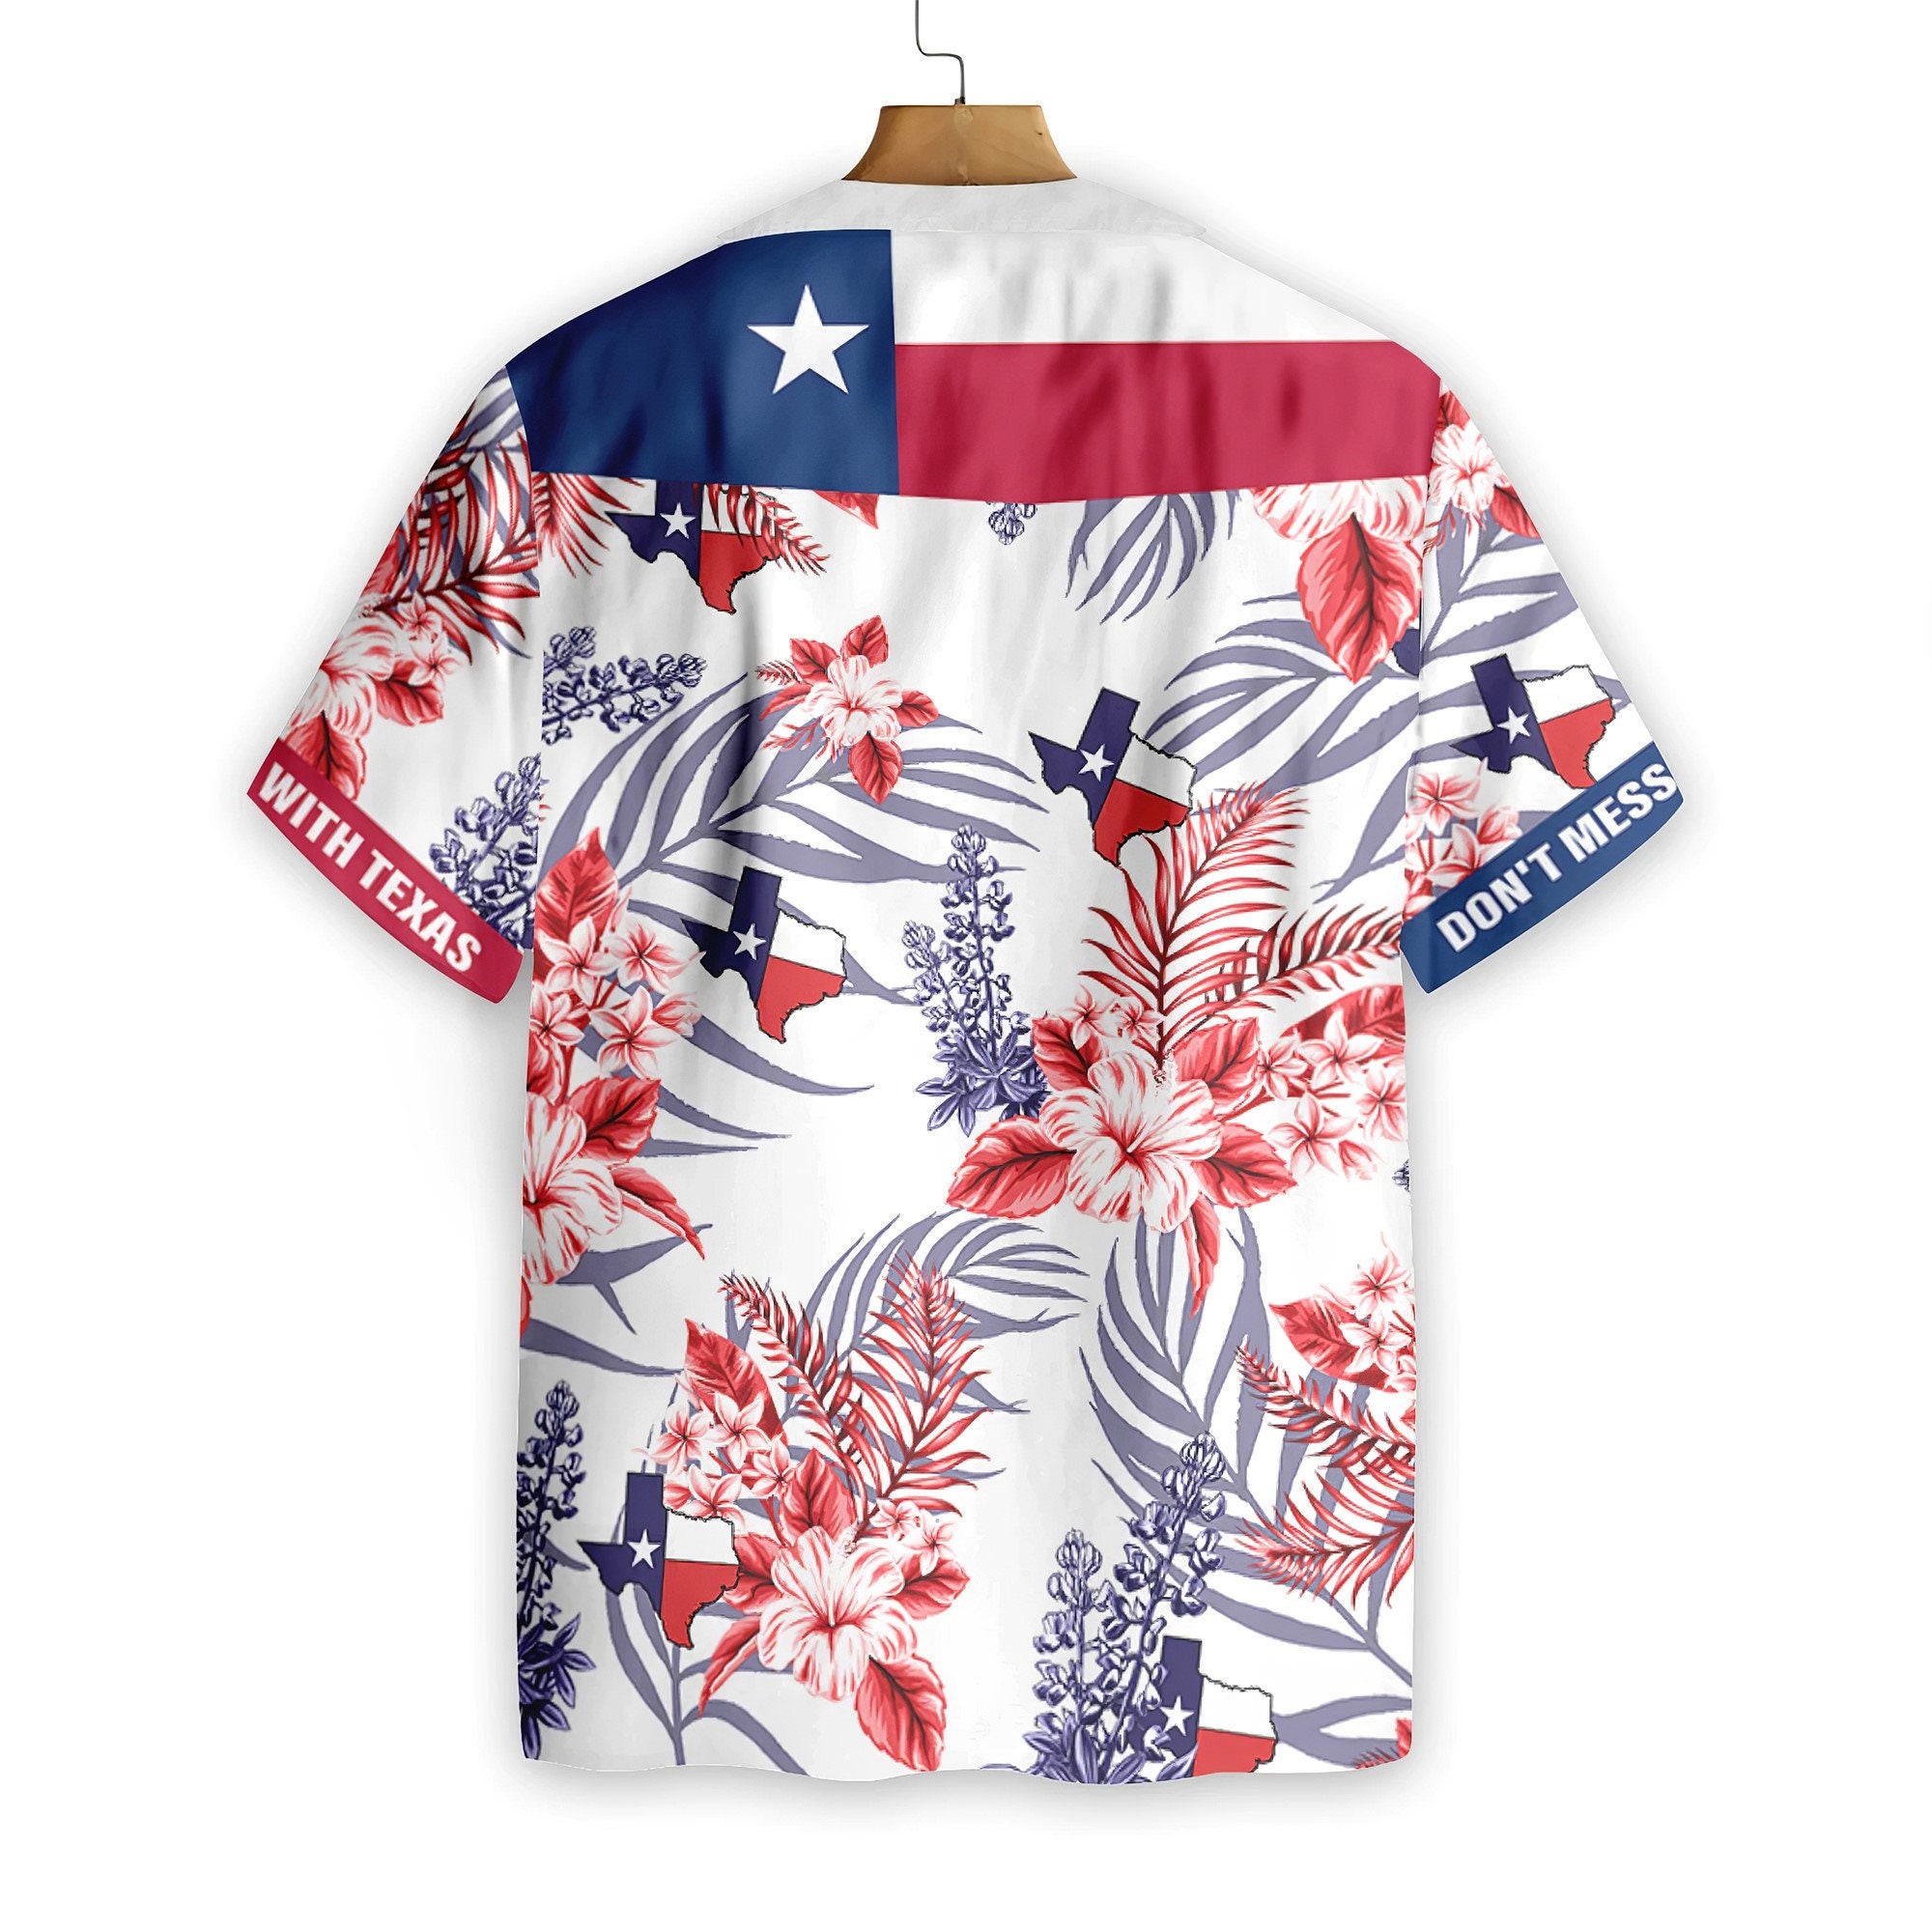 Hawaiian Shirt For Men, Texas Home Shirt, Proud Texas Shirt For Men